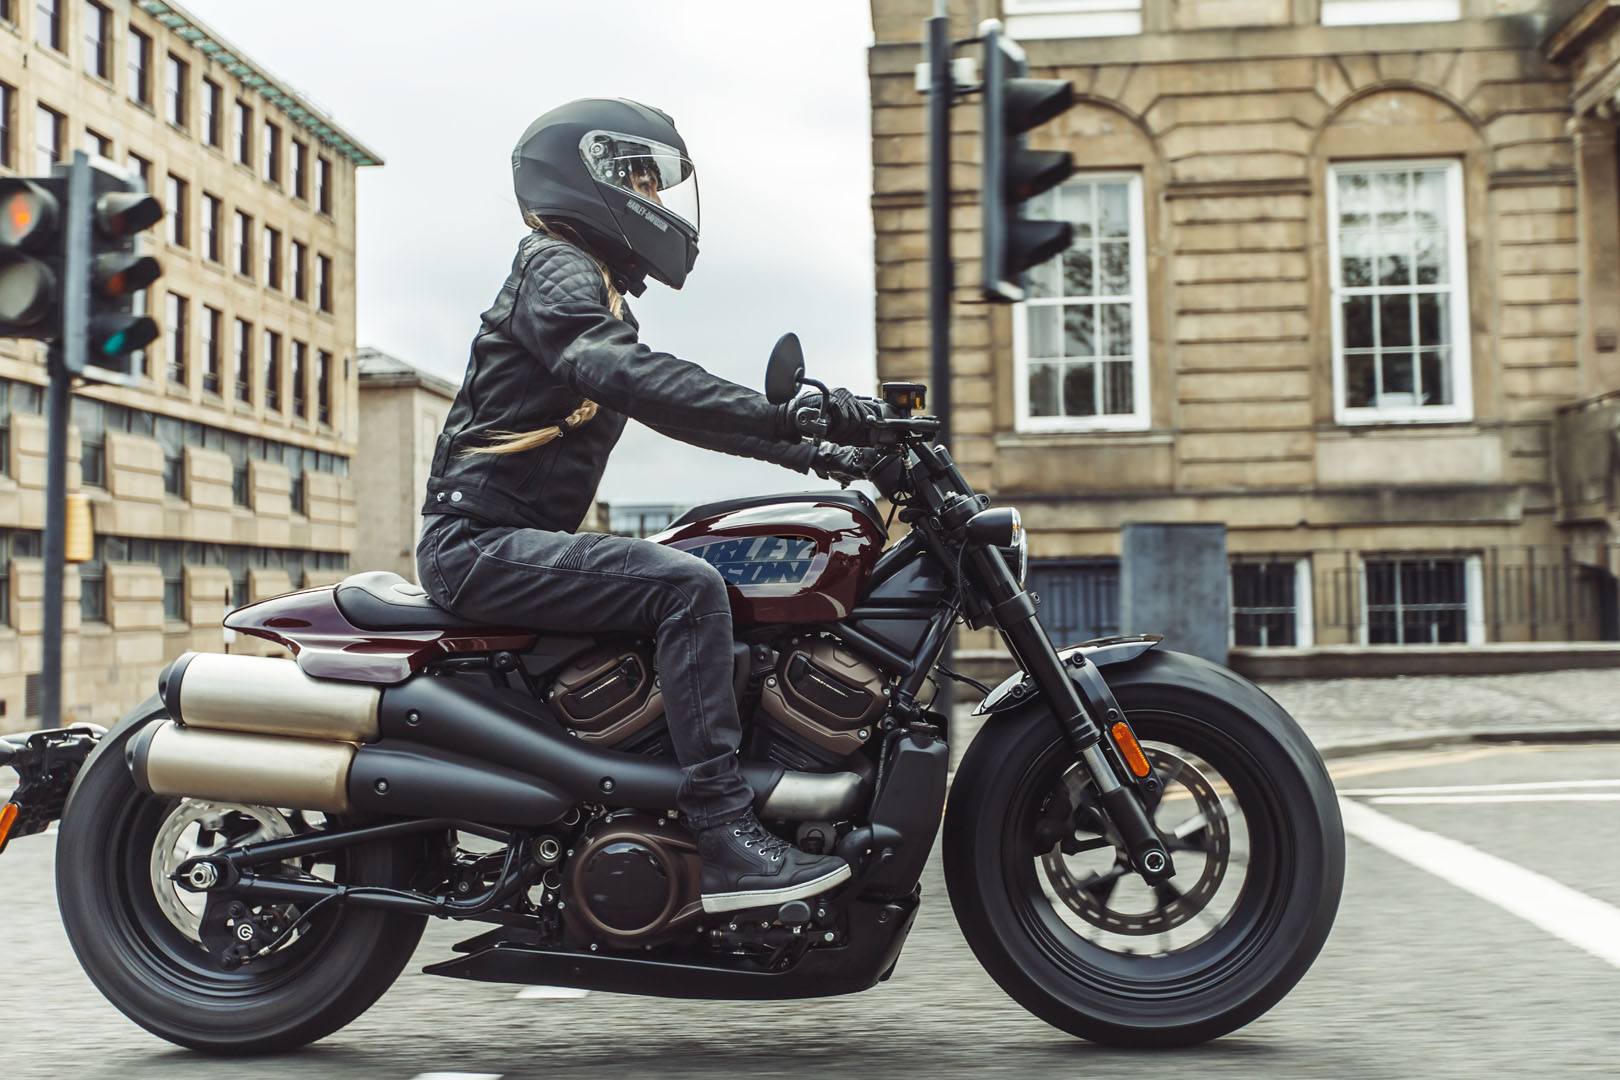 2021 Harley-Davidson Sportster® S in Burlington, Iowa - Photo 16